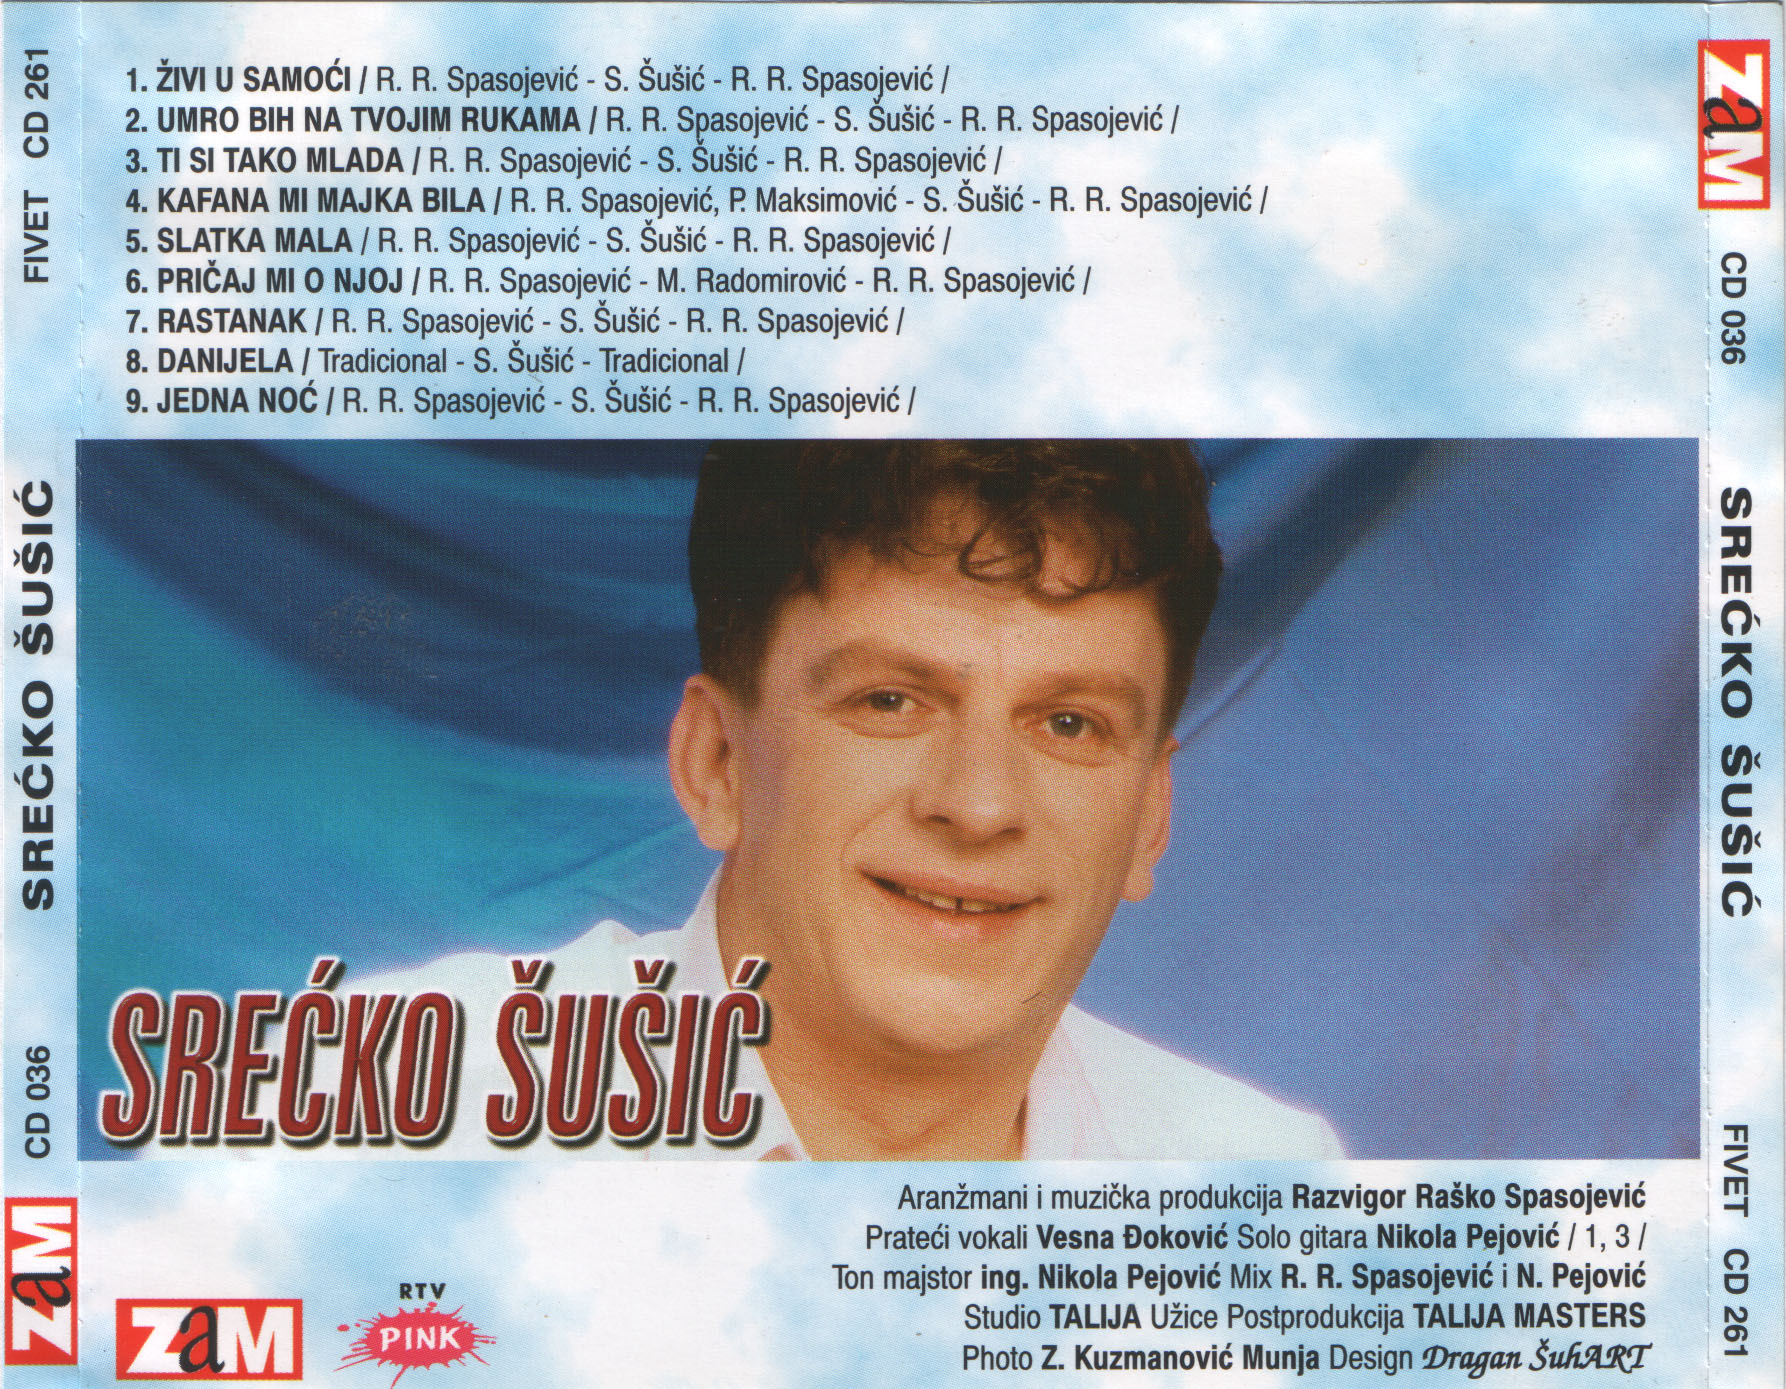 Srecko Susic 1999 Zadnja